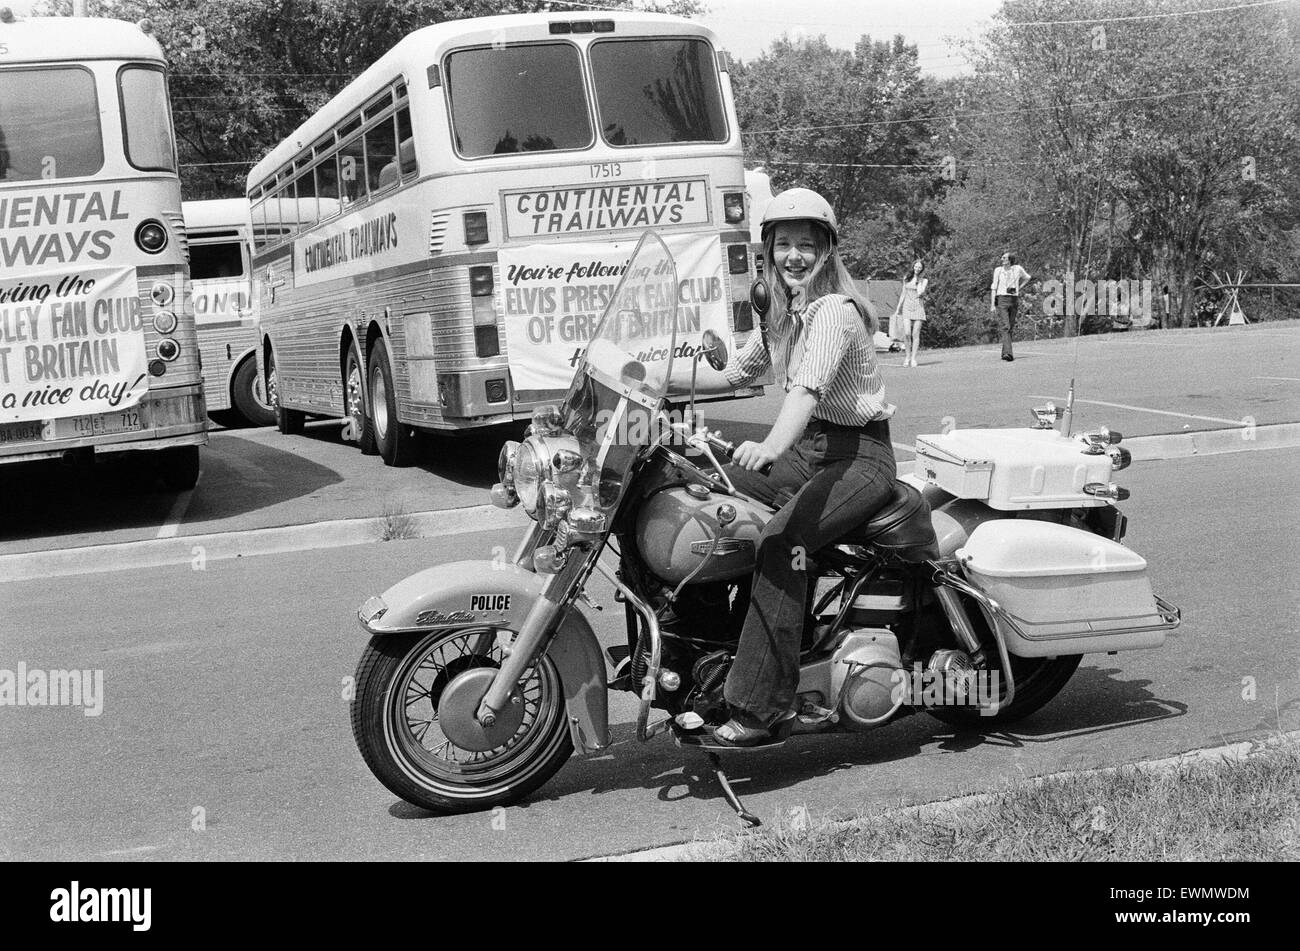 Tupelo ist Geburtsort von Elvis Presley. Mitglied des Elvis Presley Fan Club of Great Britain, probiert ein Polizeimotorrad Stadtgrenzen, Tupelo, Lee County, Mississippi, USA, 27. August 1973. Stockfoto